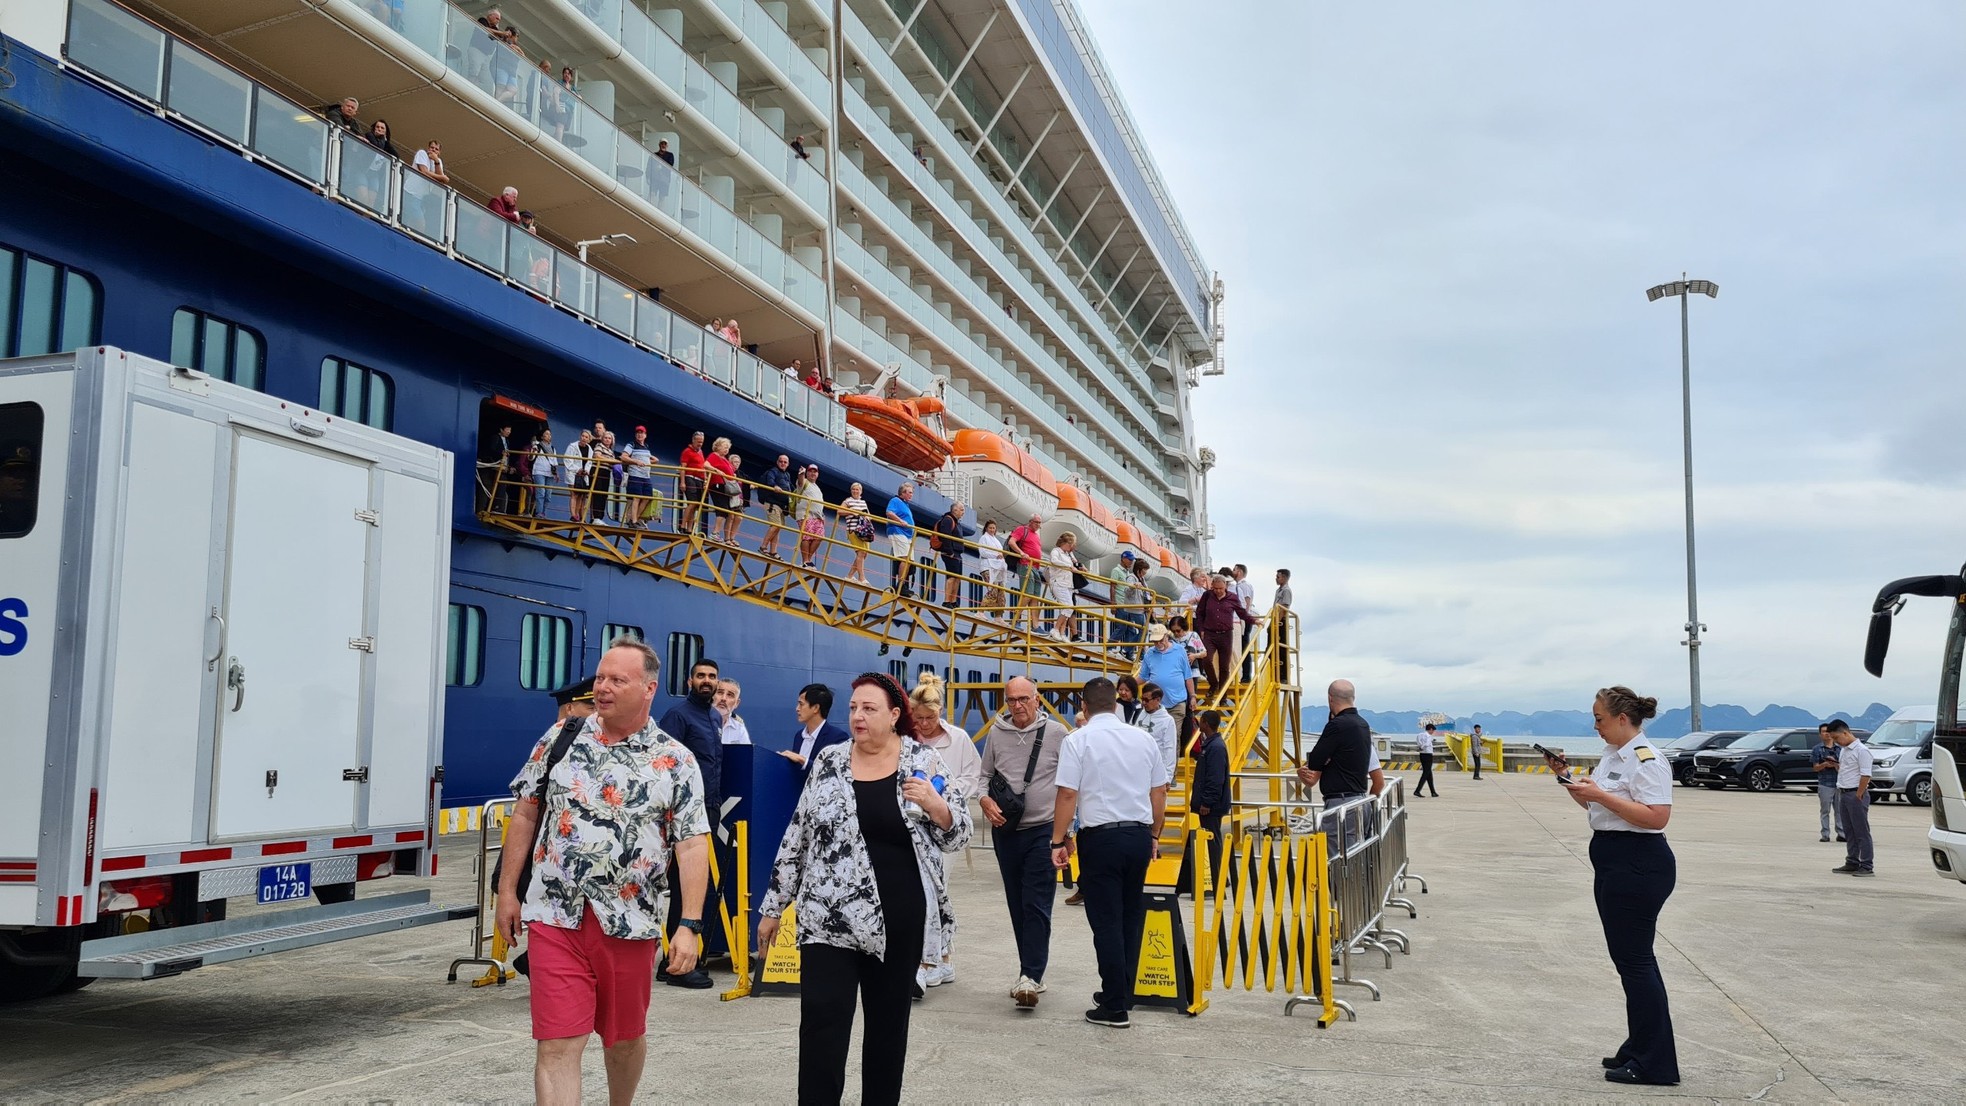 Hơn 2.600 khách quốc tế đến Hạ Long bằng siêu du thuyền - Ảnh 6.